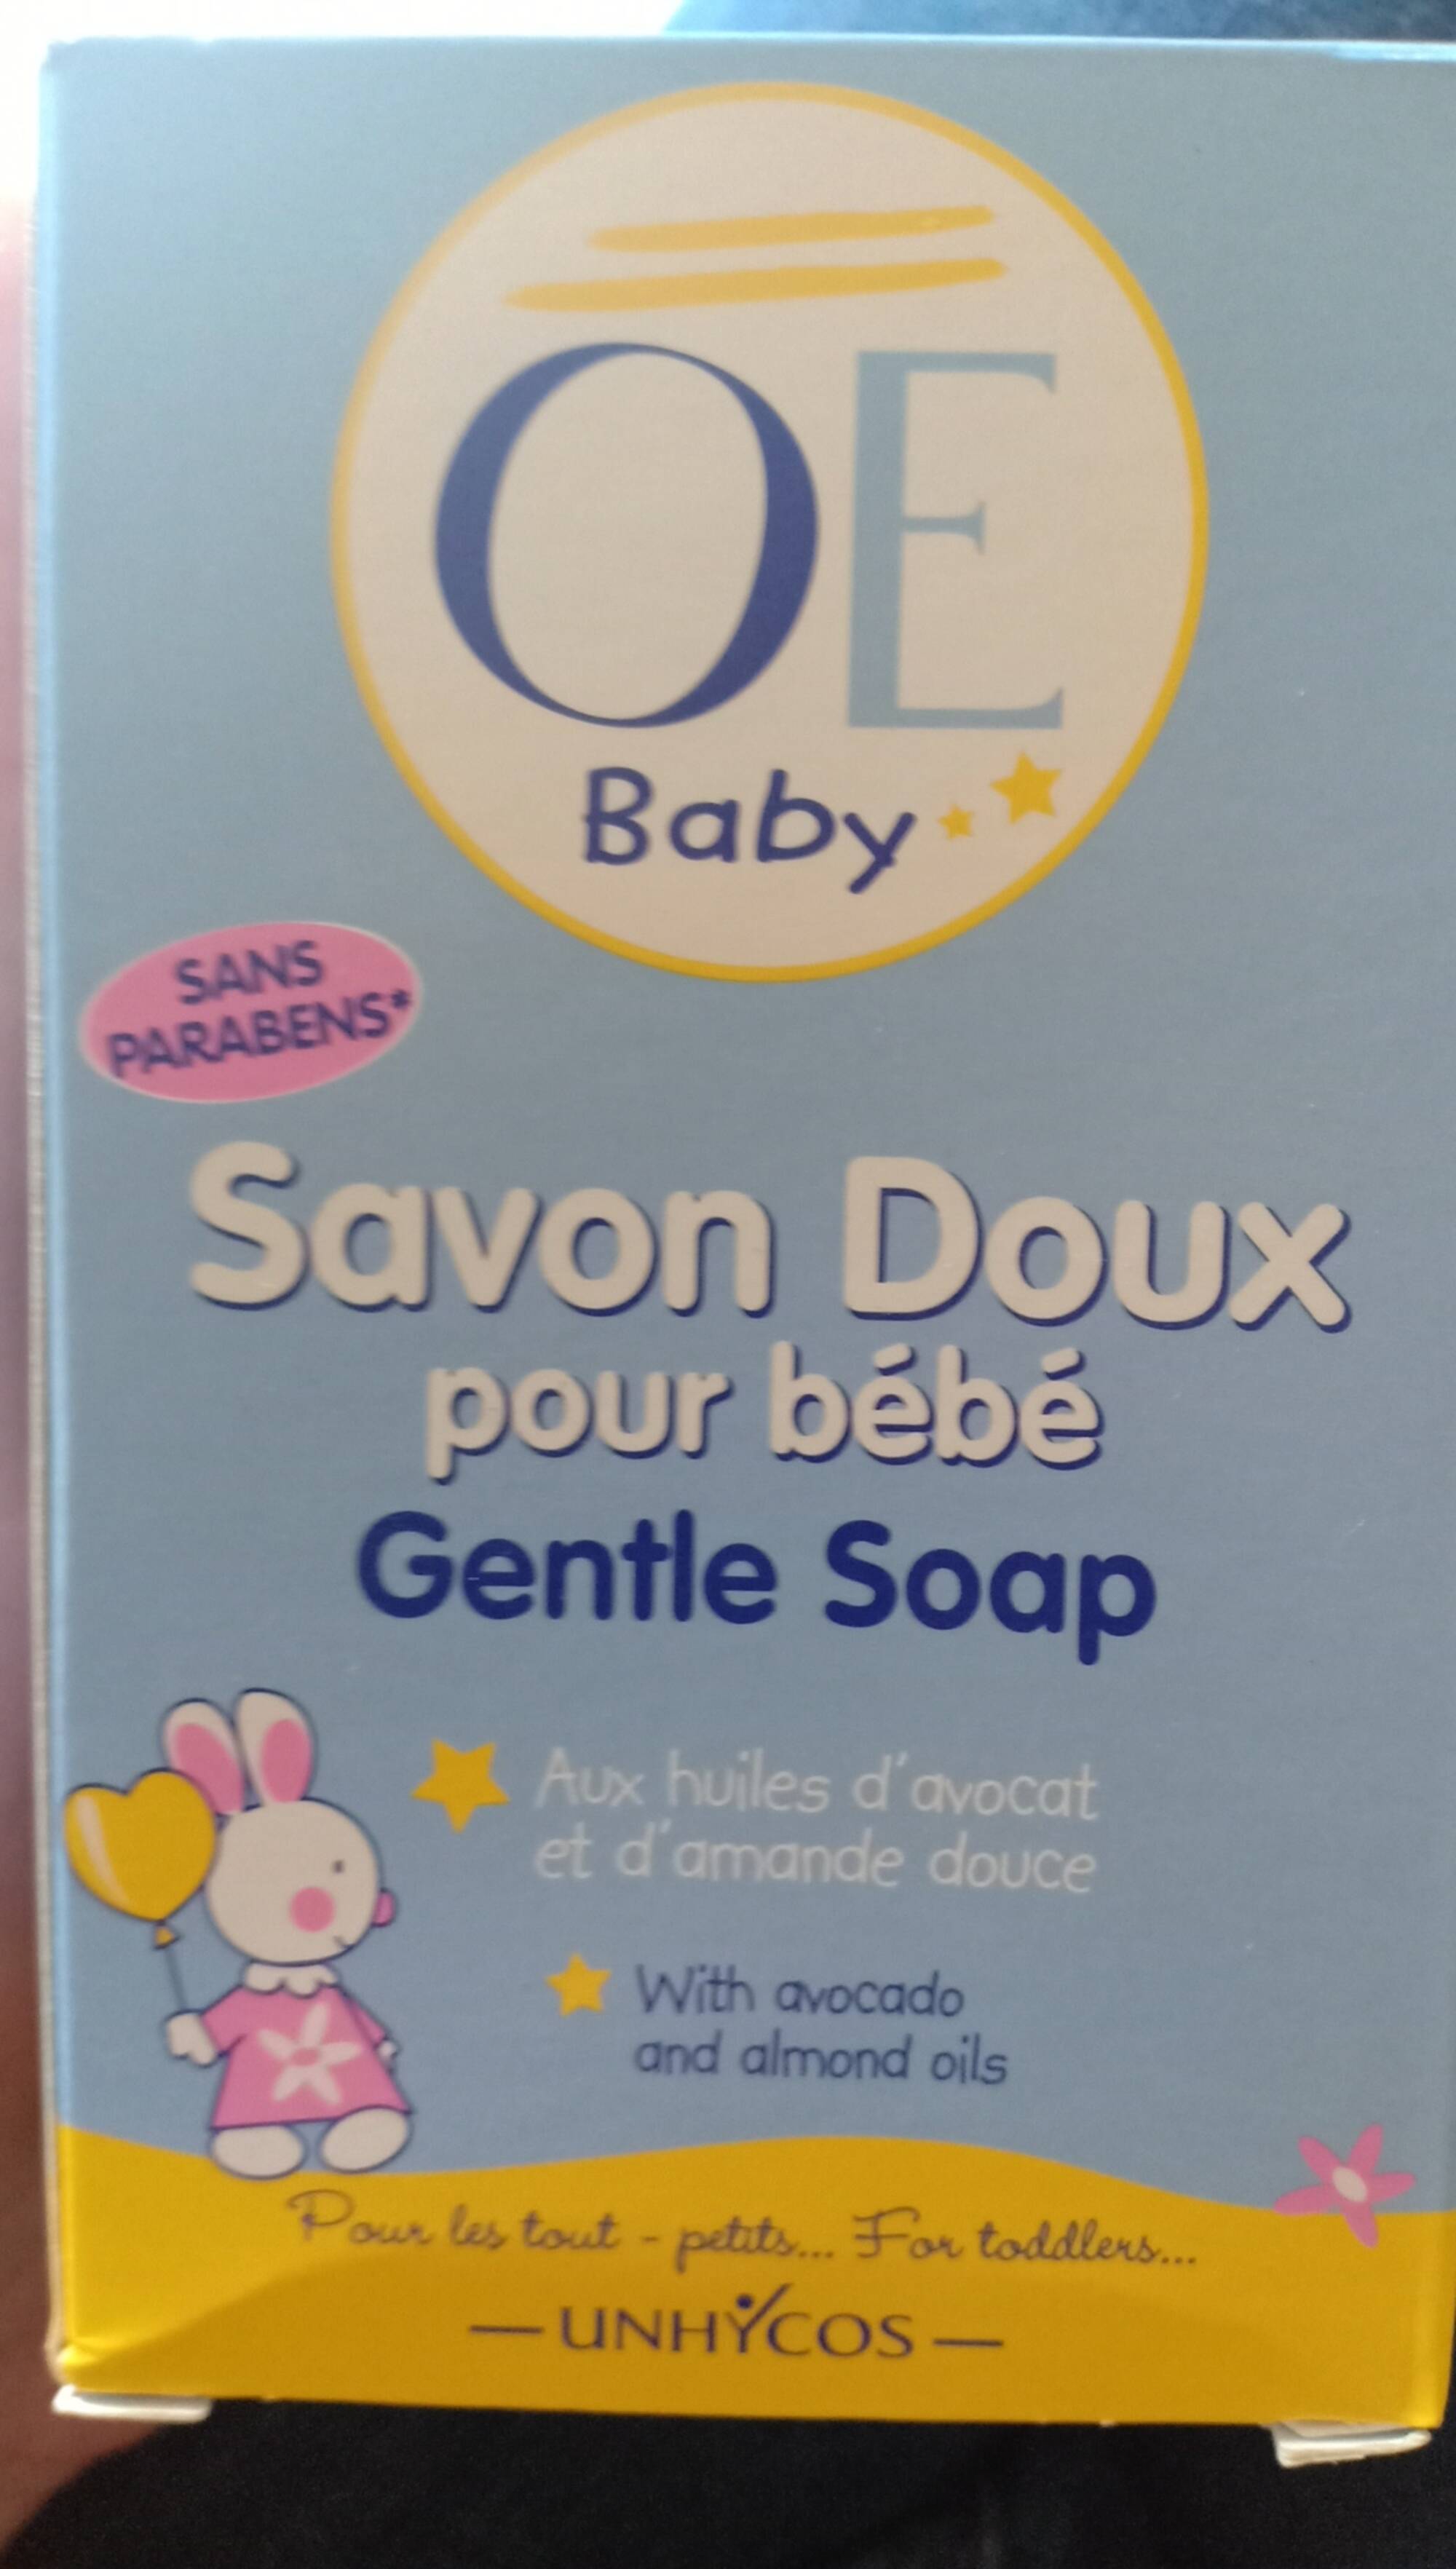 OÉ BABY - Savon doux pour bébé